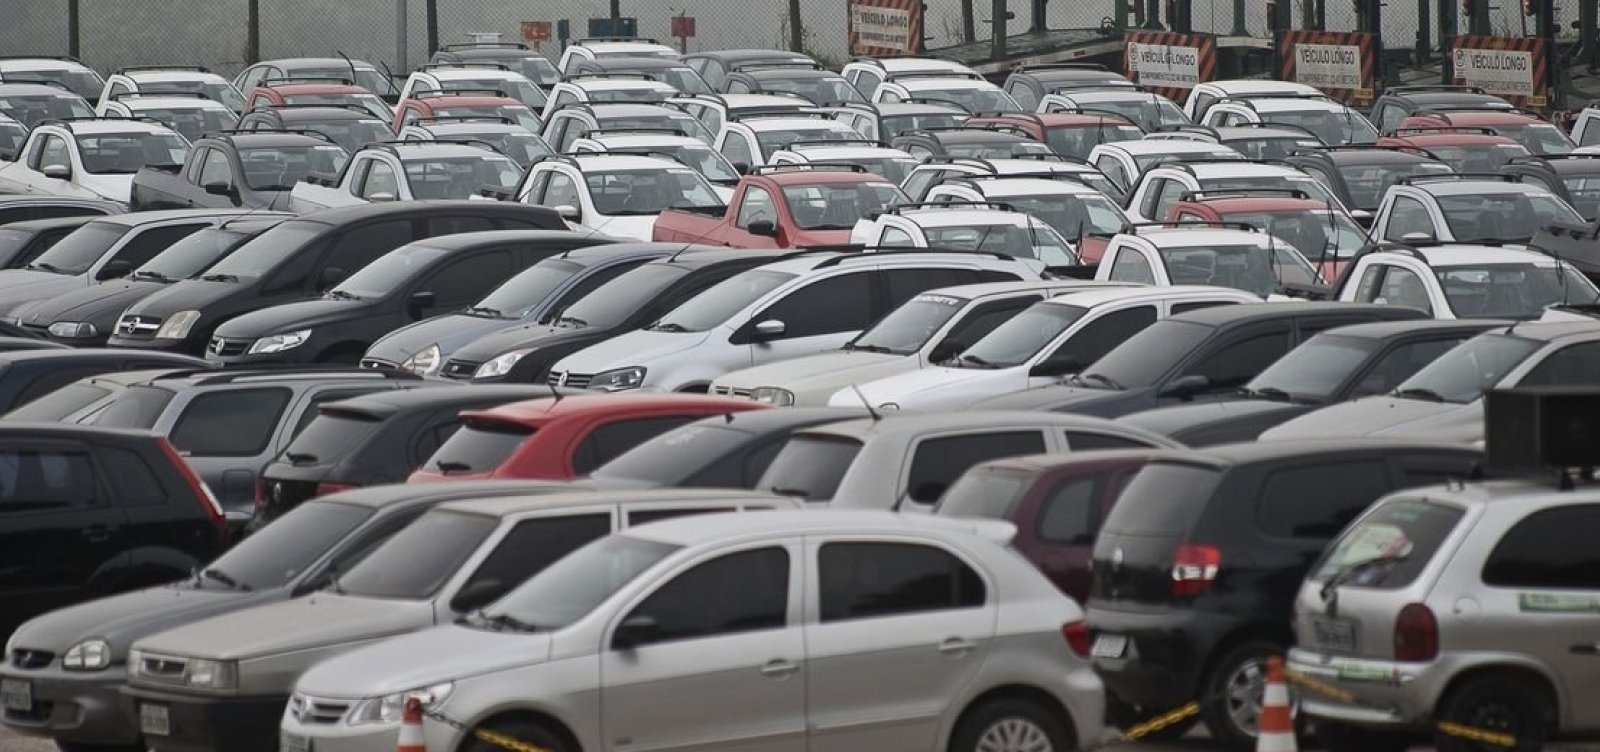 Venda de veículos novos no Brasil sobe em março, aponta Fenabrave